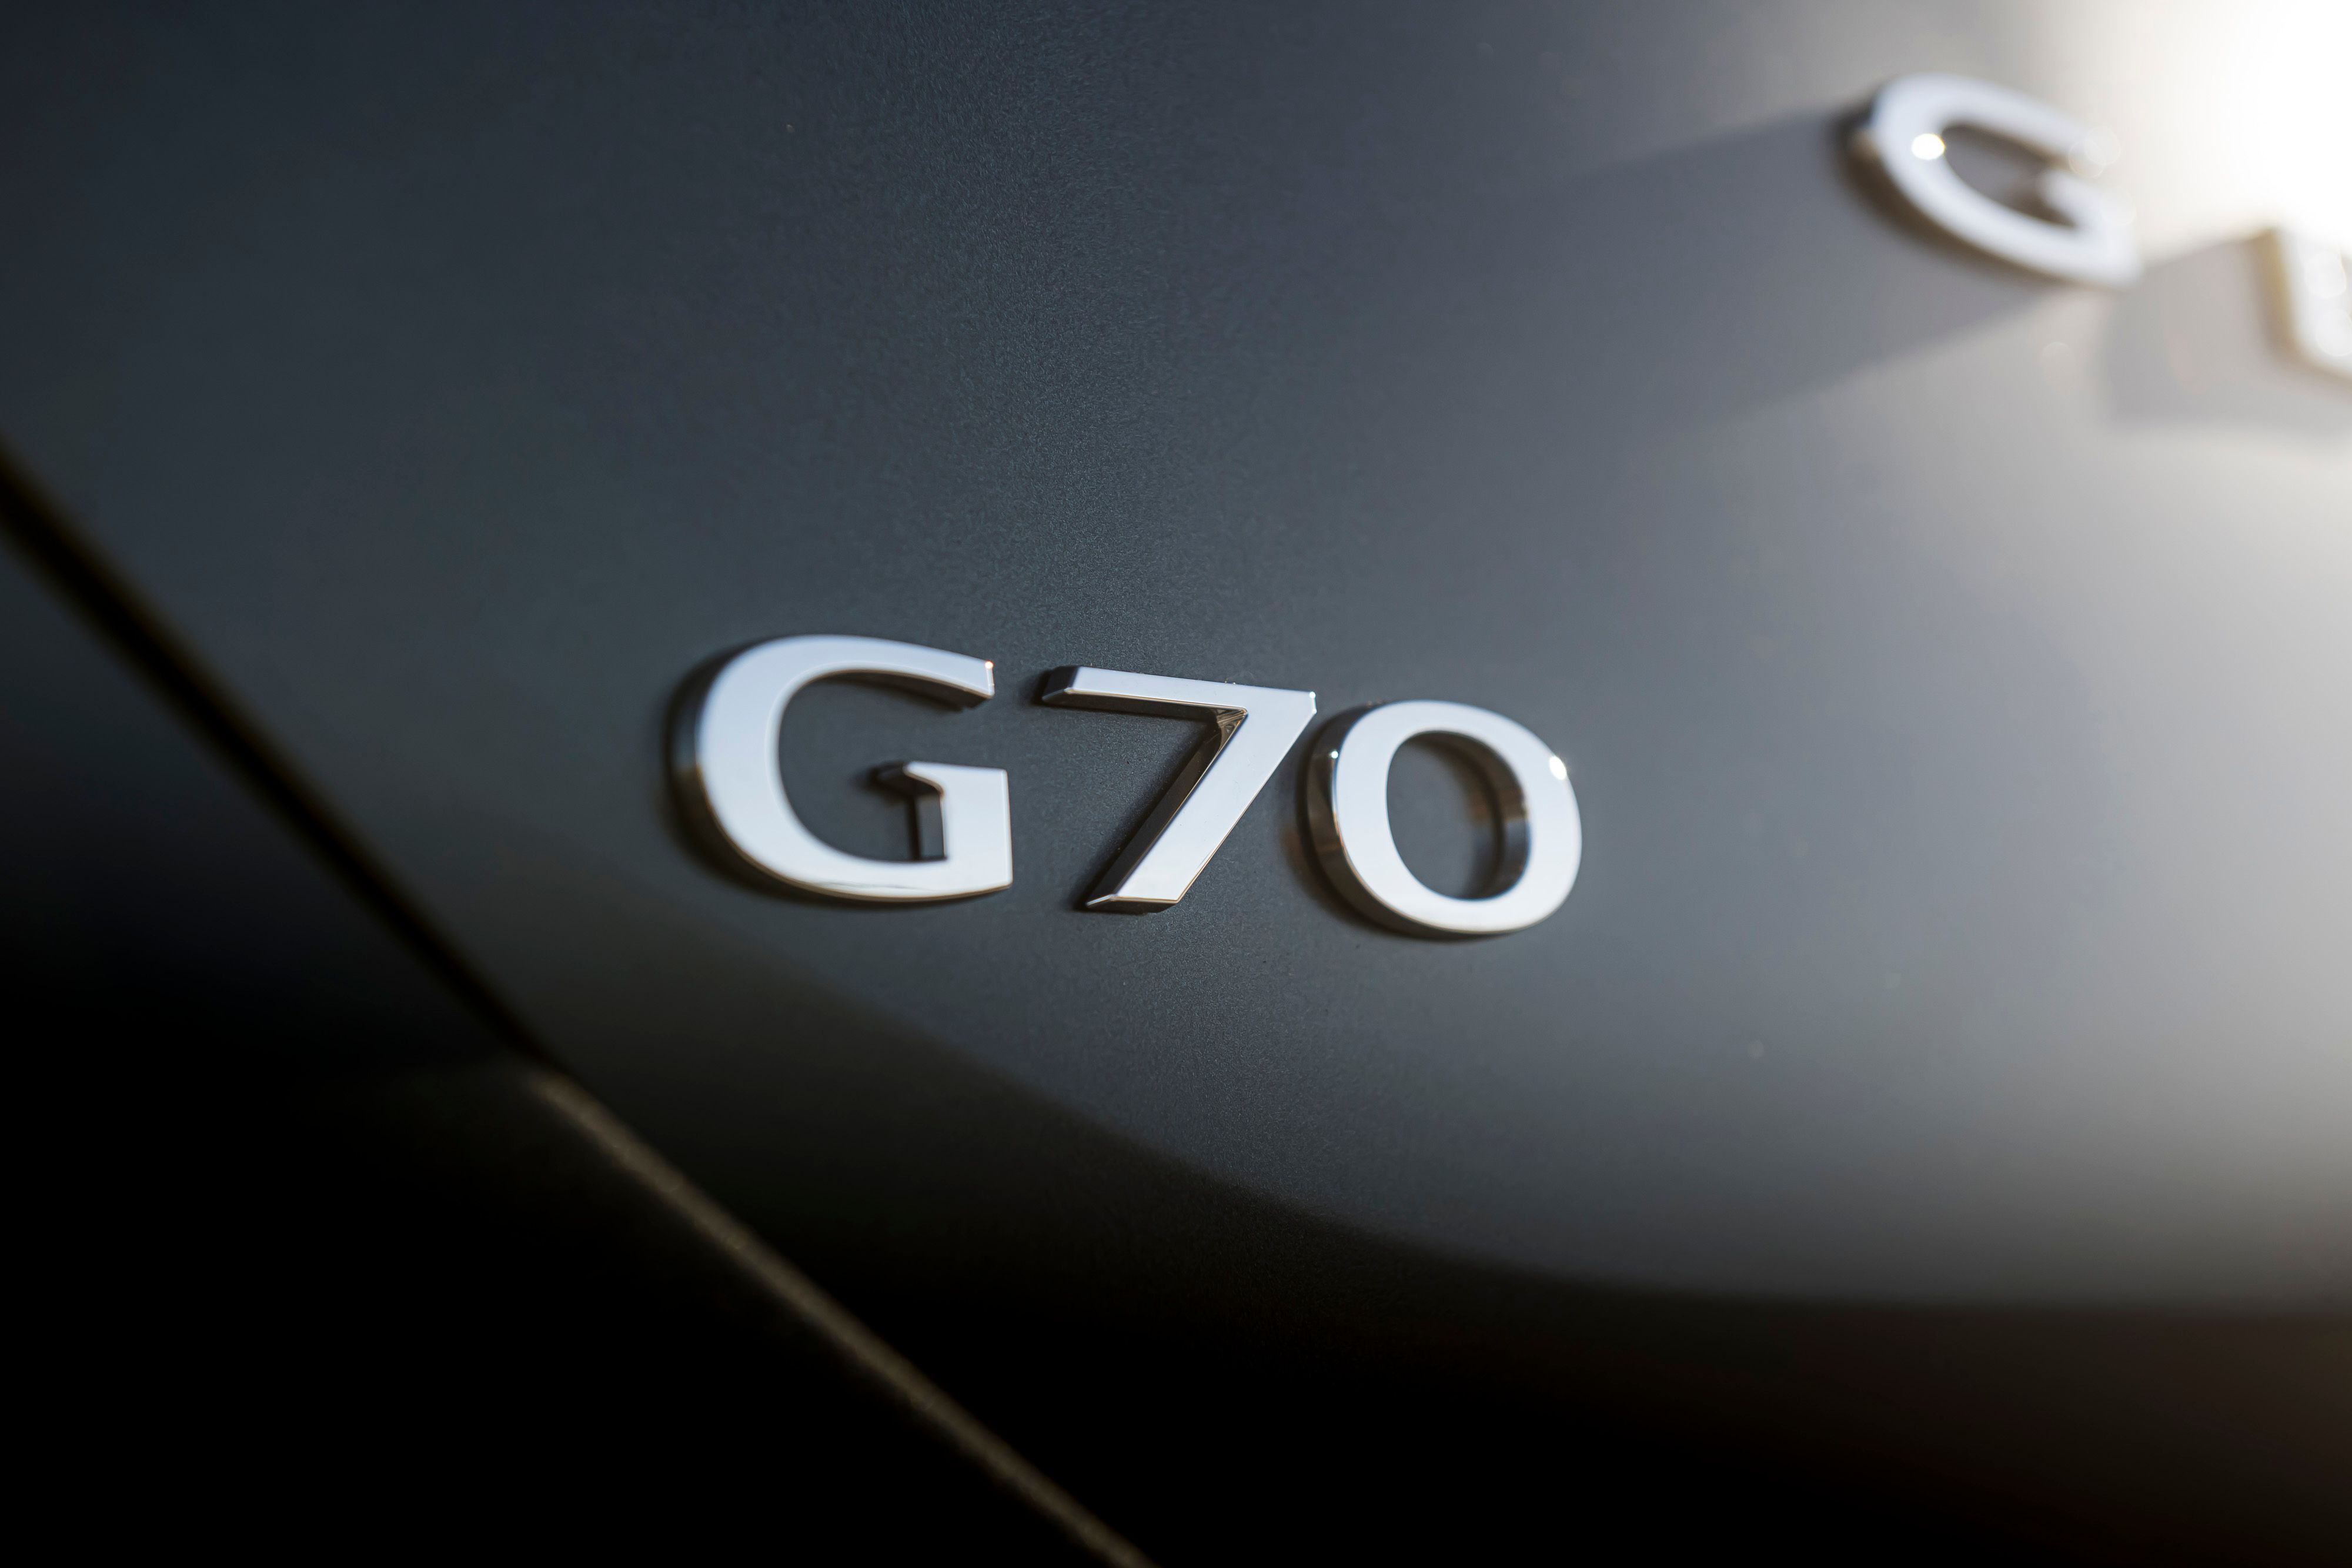 2021 Genesis G70